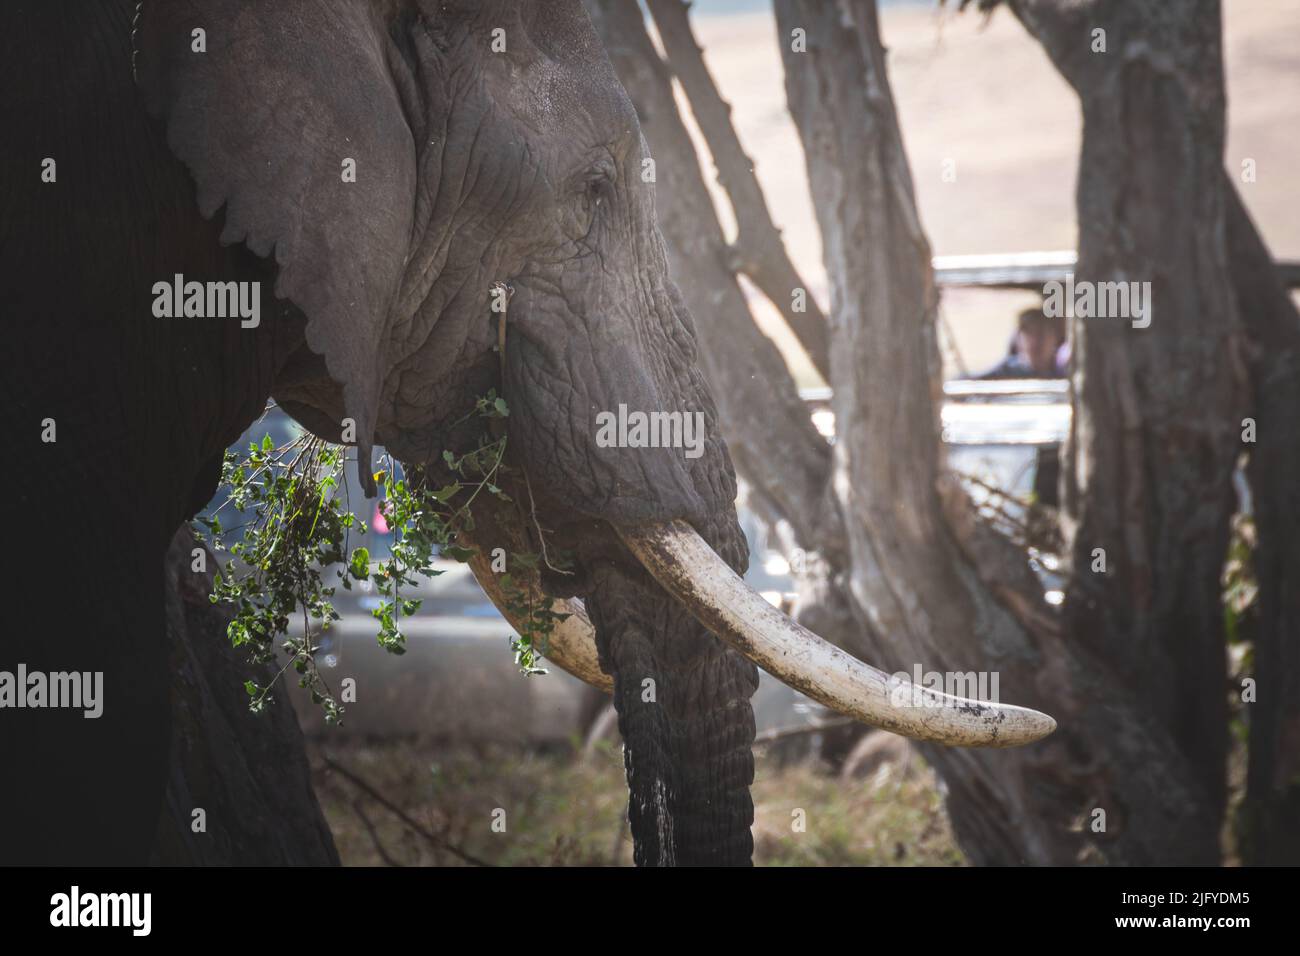 Cerca de elefante adulto grande aislado (Elephantidae) en el área de conservación de pastizales del cráter Ngorongoro. Concepto de safari de vida silvestre. Tanzania. AF Foto de stock